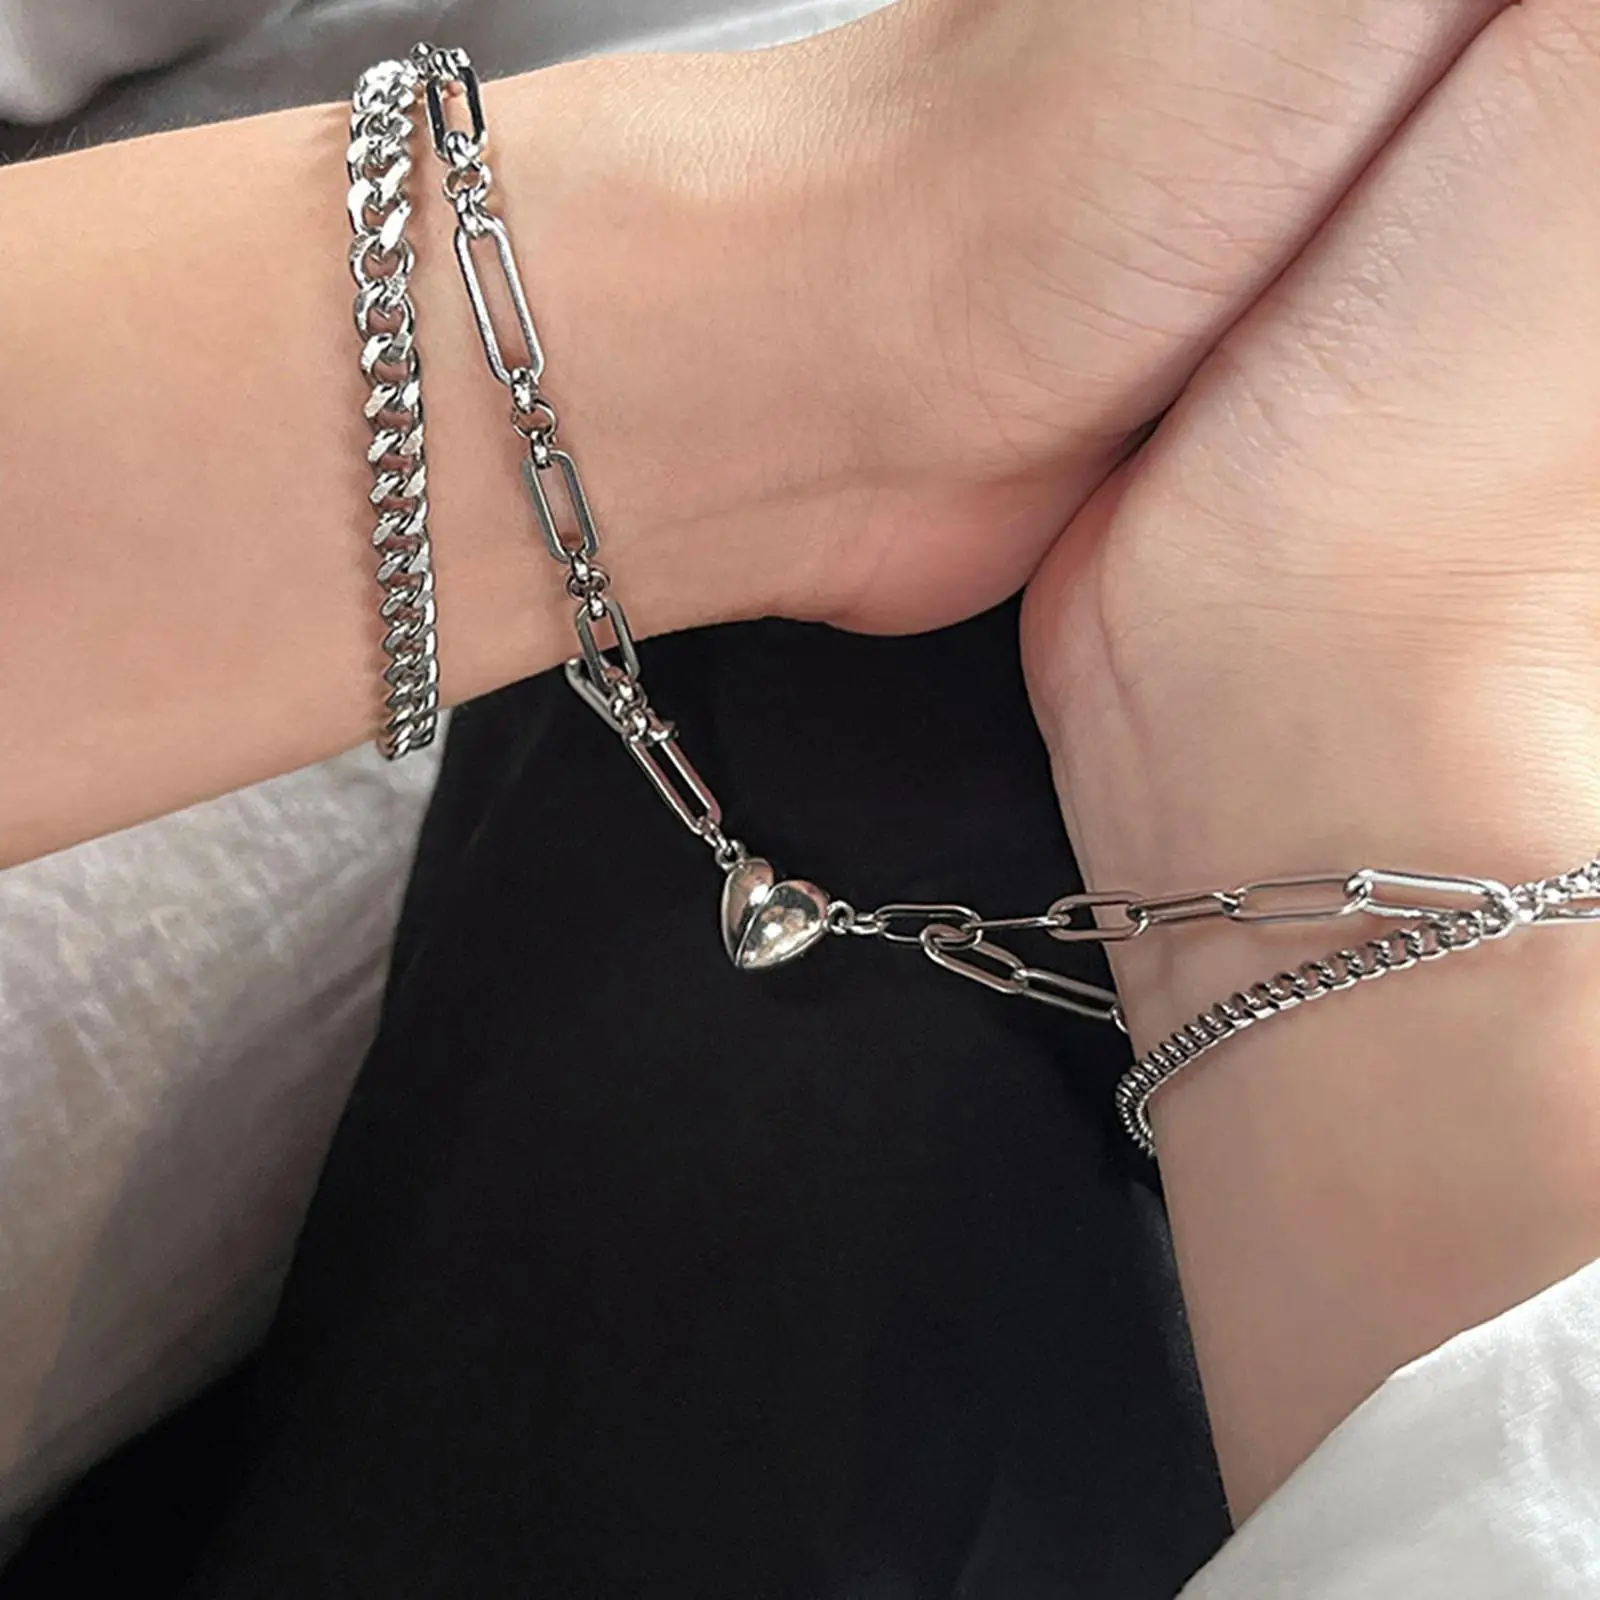 2 Pieces Titanium heart Magnetic Couple Bracelets Mutual Attraction Bracelets for friend Friendship Women and Men